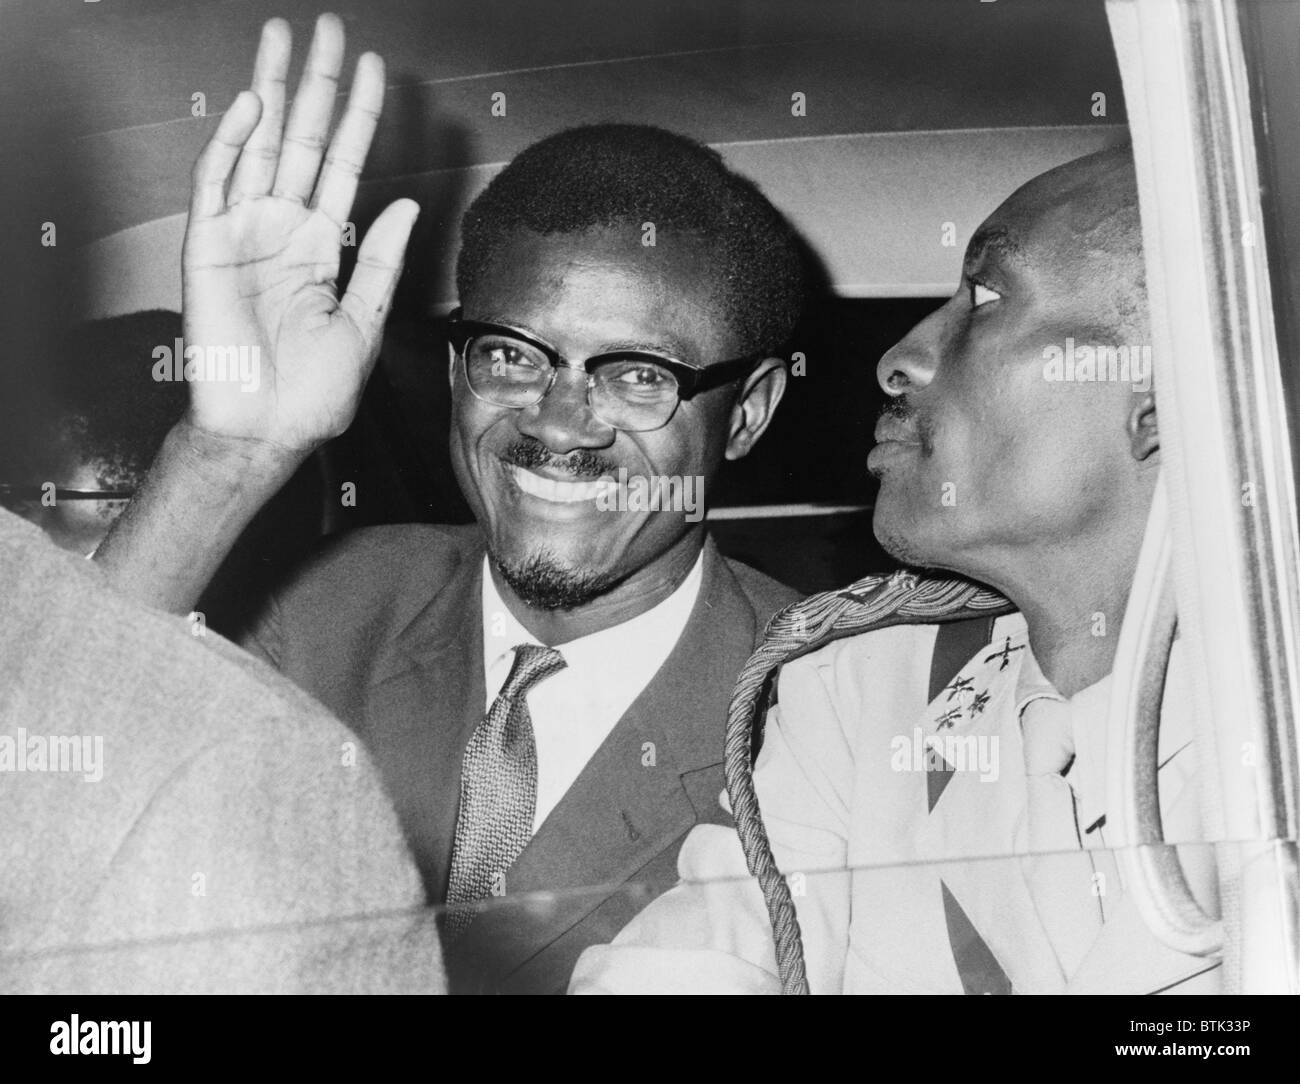 Patrice Lumumba (1925-1961) Premier Premier Ministre du Congo en 1960, à New York pour des réunions avec le Secrétaire général des Nations Unies, Dag Hammarskjöld à l'appel à l'aide de sa nation nouvellement indépendante. Banque D'Images